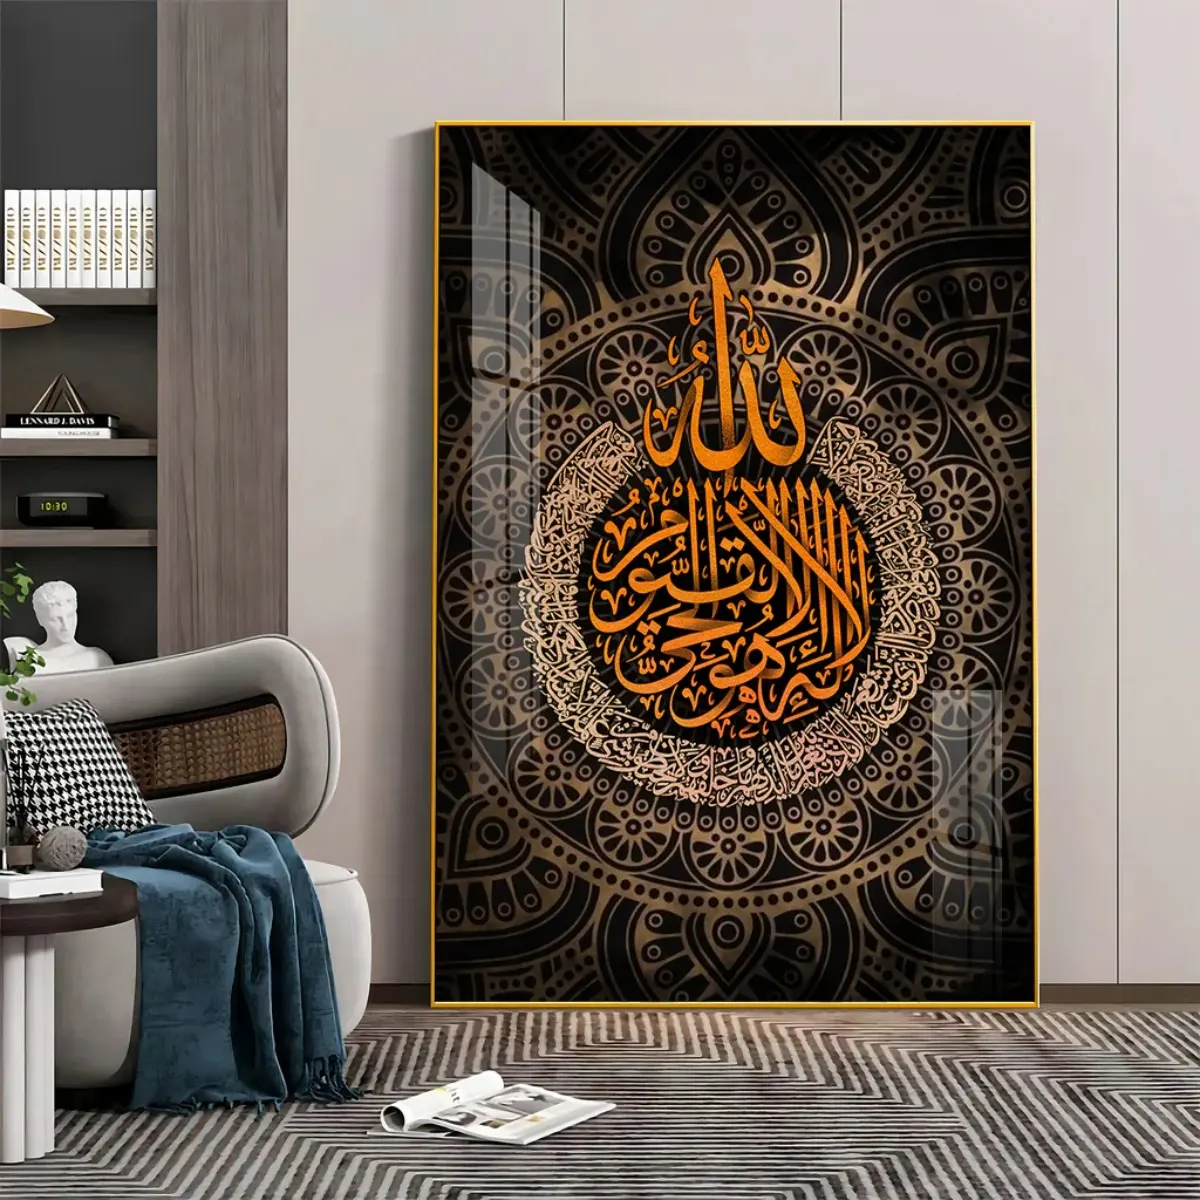 Hồi Giáo Trang trí nội thất tường treo nghệ thuật lớn tường nghệ thuật trang trí Arabic thư pháp hồi giáo pha lê sứ bức tranh tường nghệ thuật khung